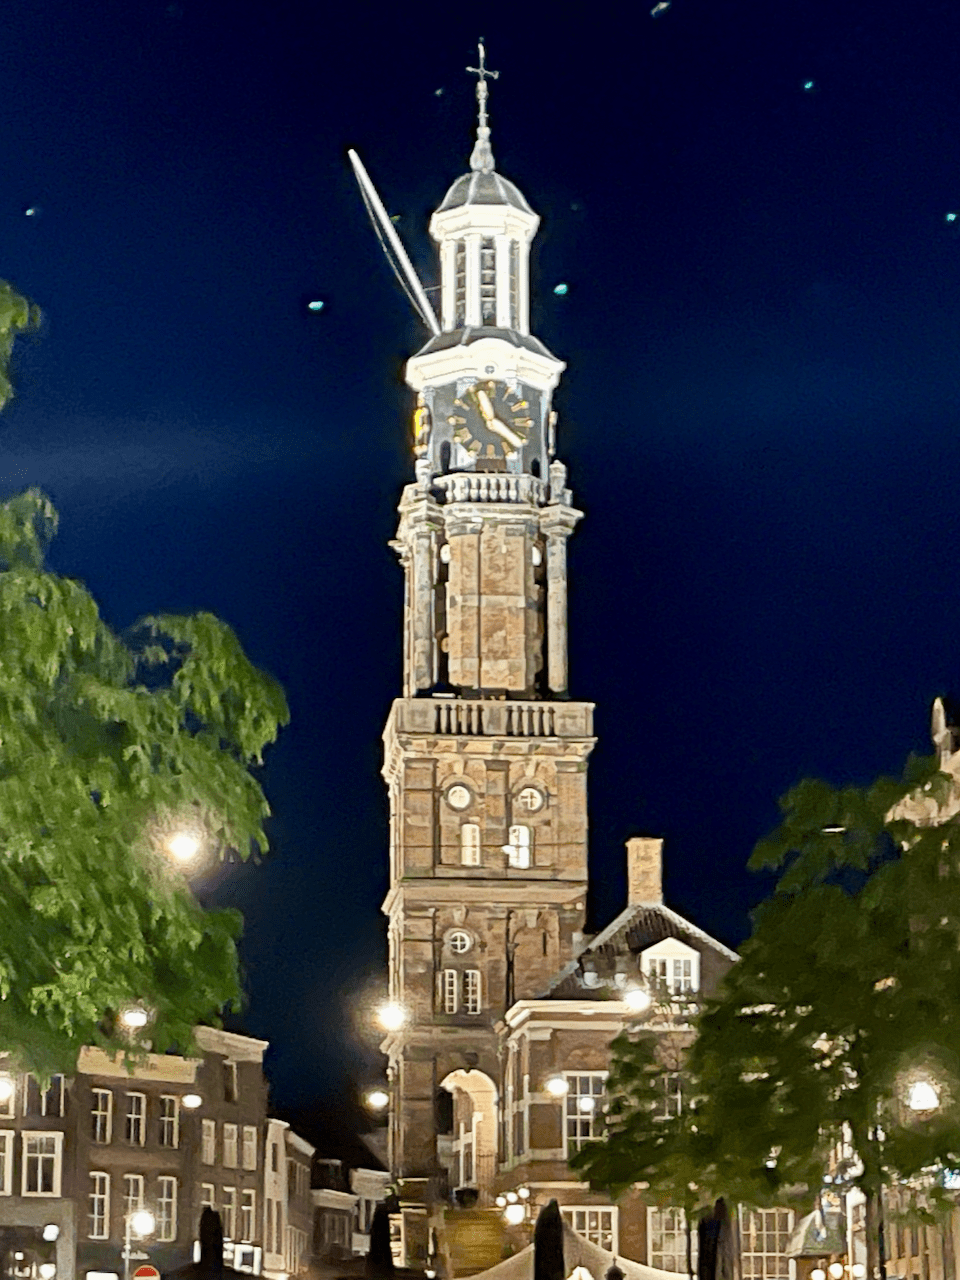 Wijnhuistoren zutphen Netherlands kerkstraatje3 zutphen